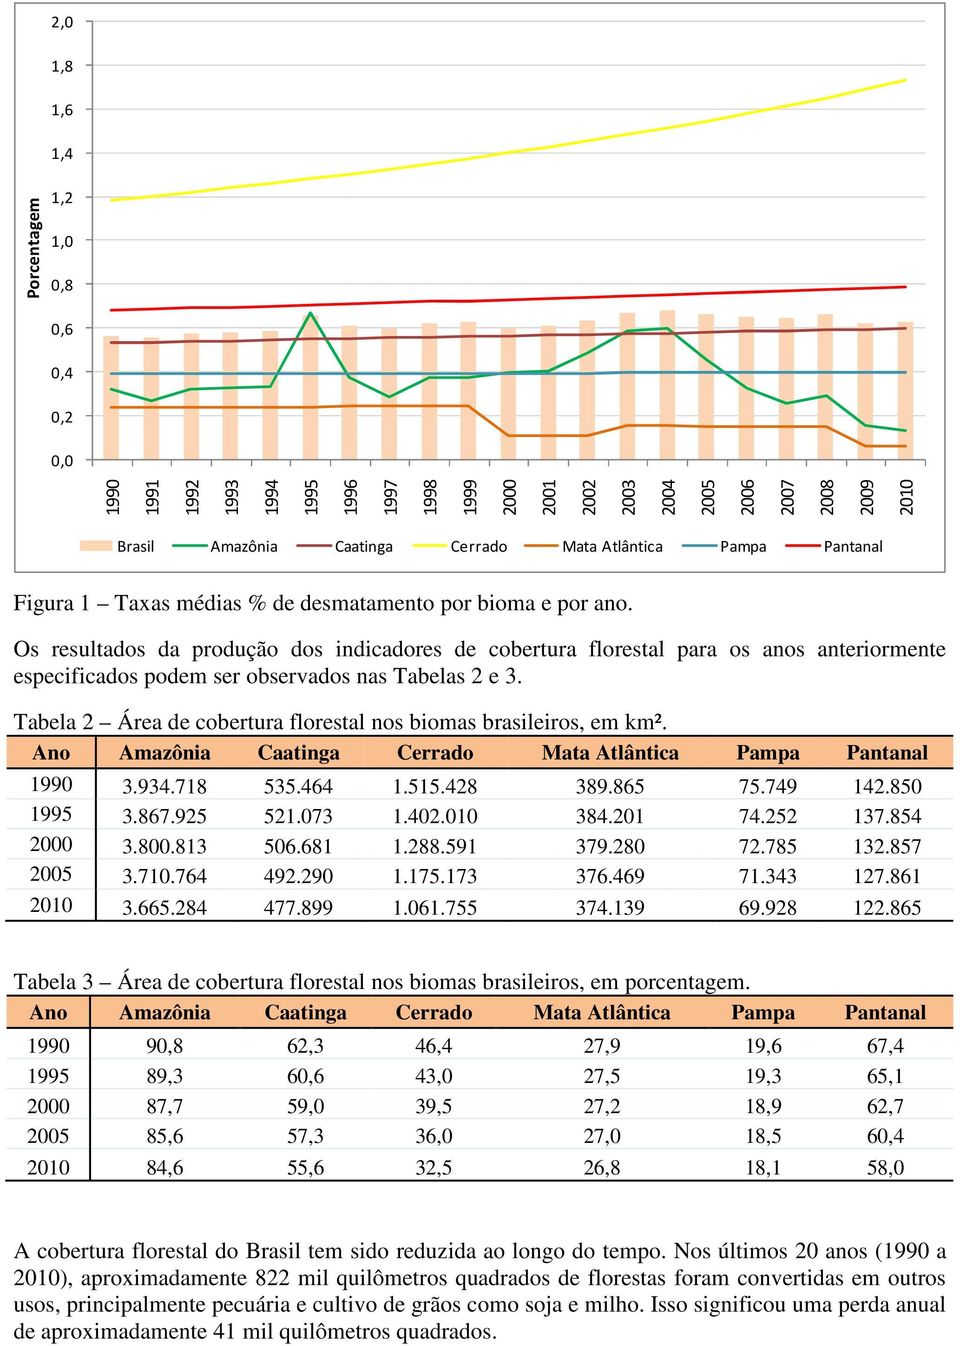 Os resultados da produção dos indicadores de cobertura florestal para os anos anteriormente especificados podem ser observados nas Tabelas 2 e 3.